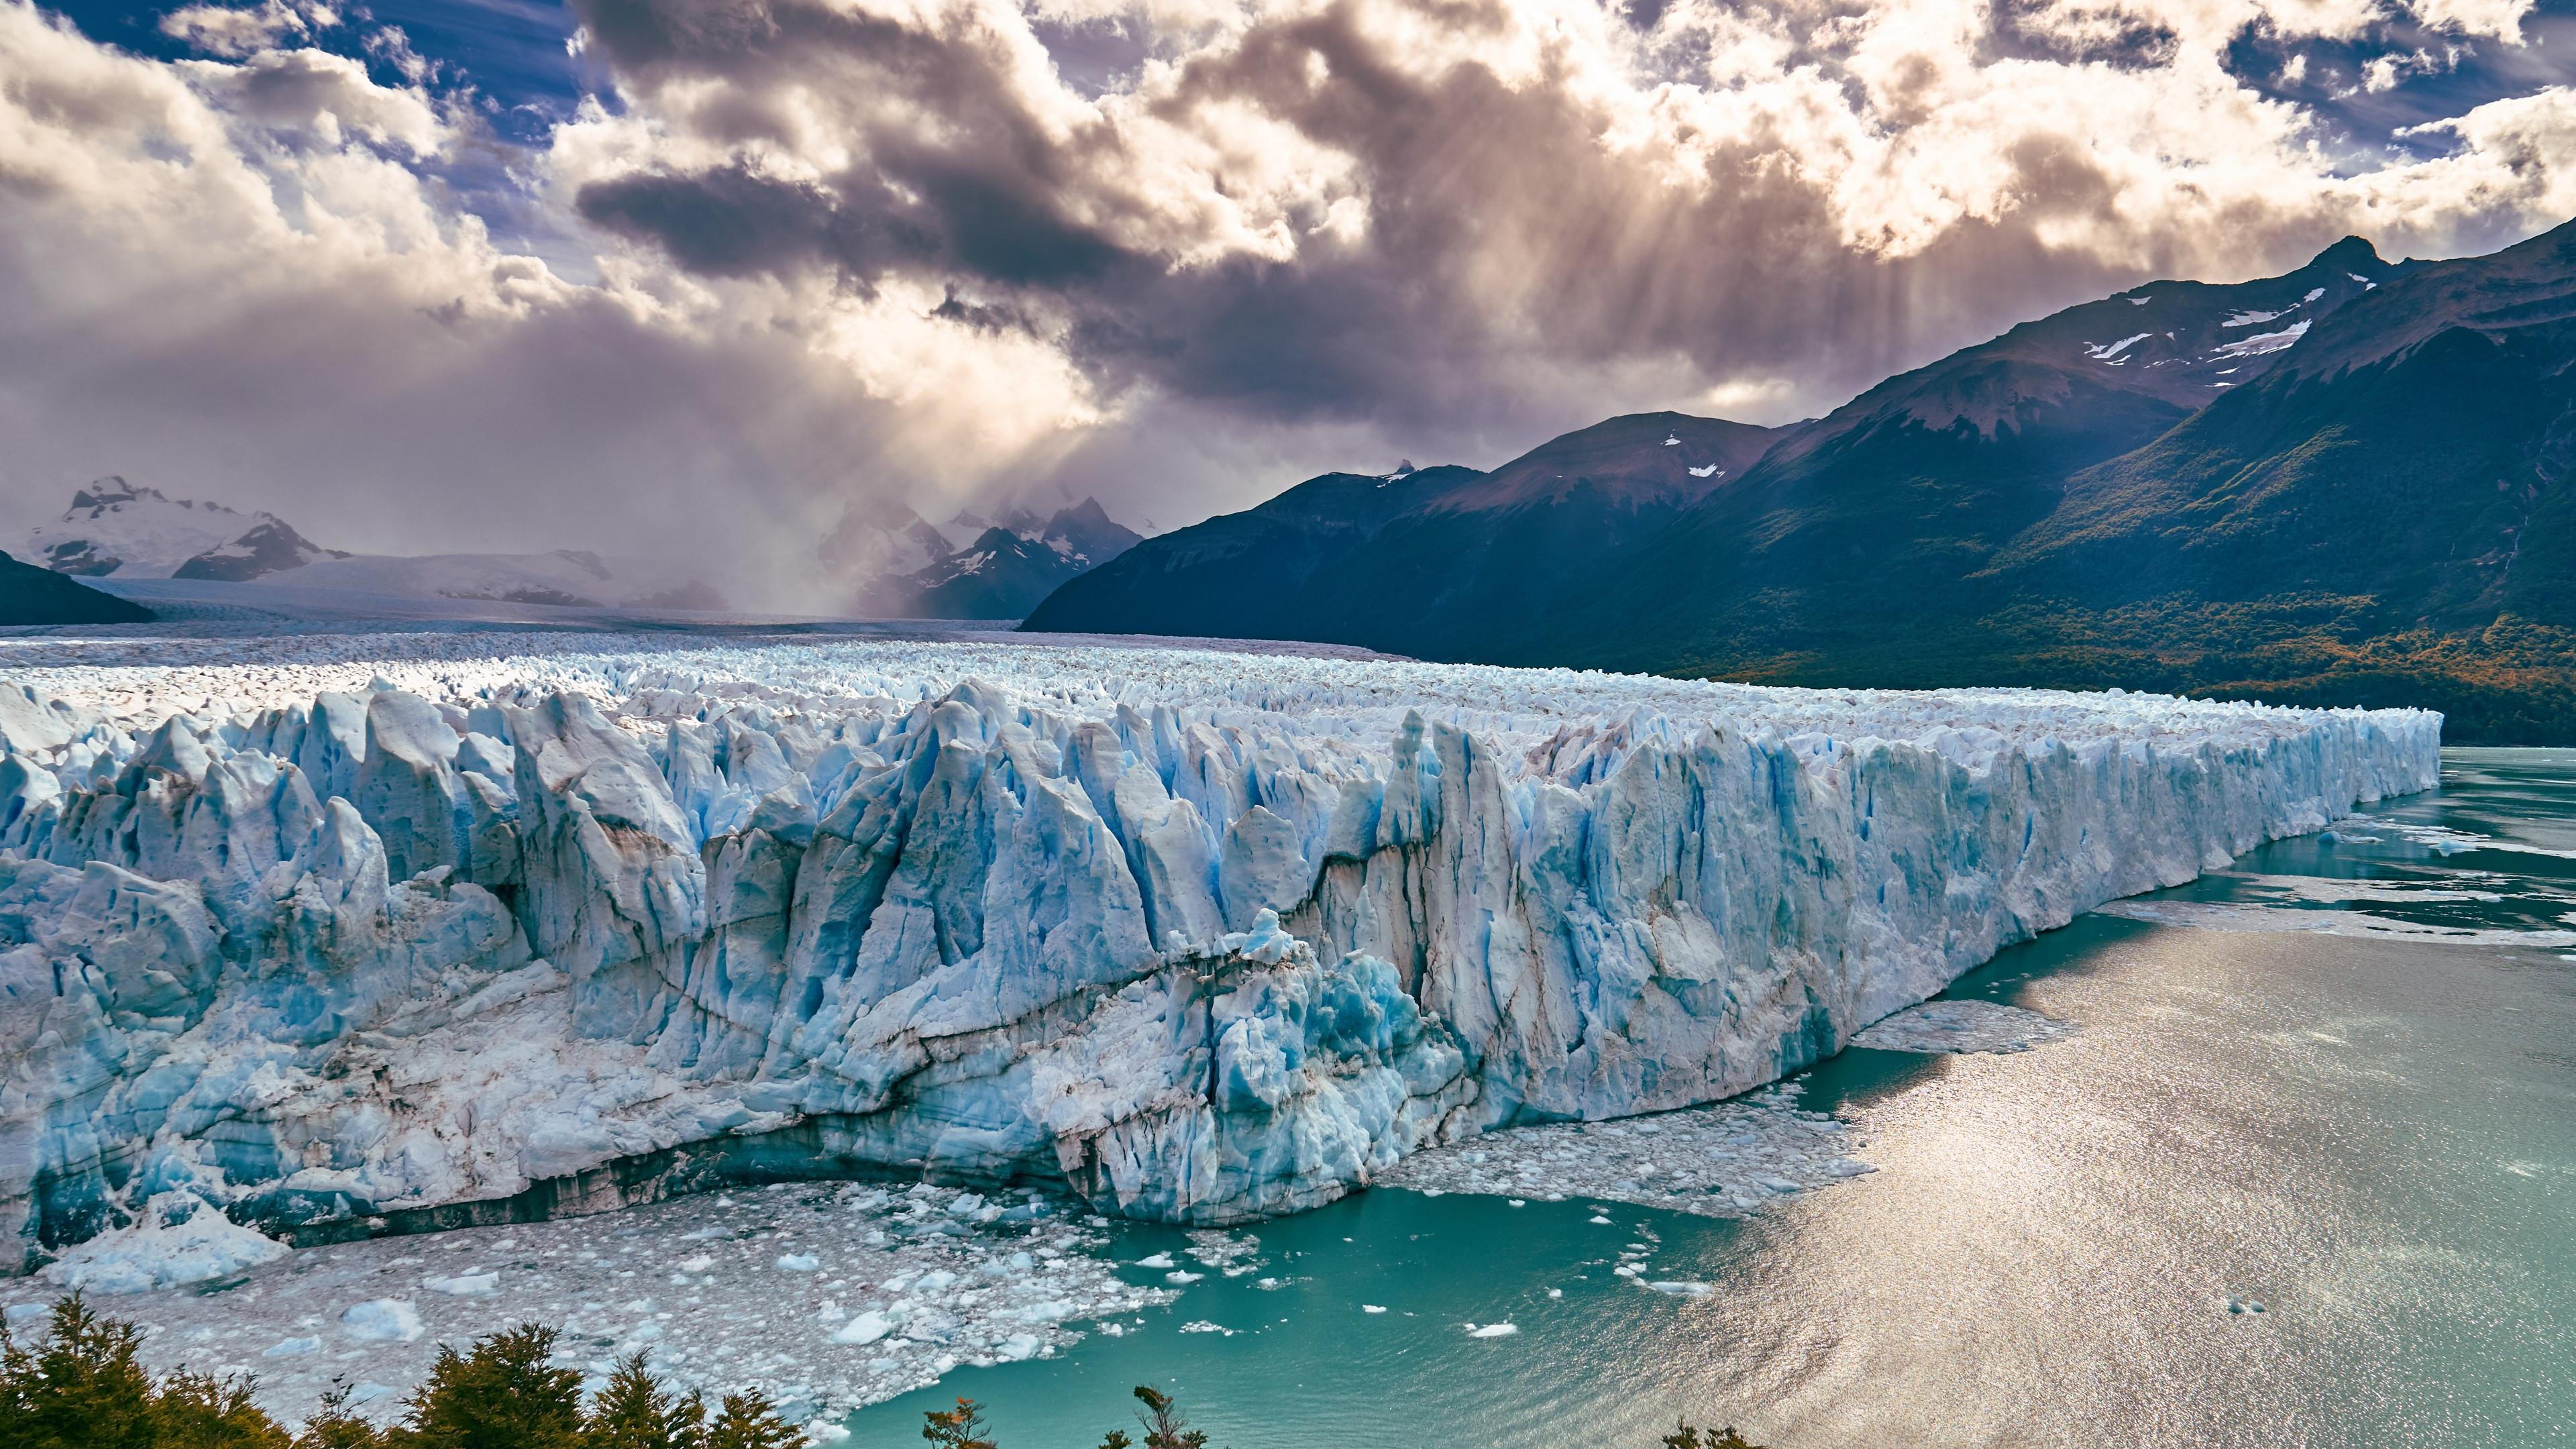 Download wallpaper: Perito Moreno Glacier 3840x2160